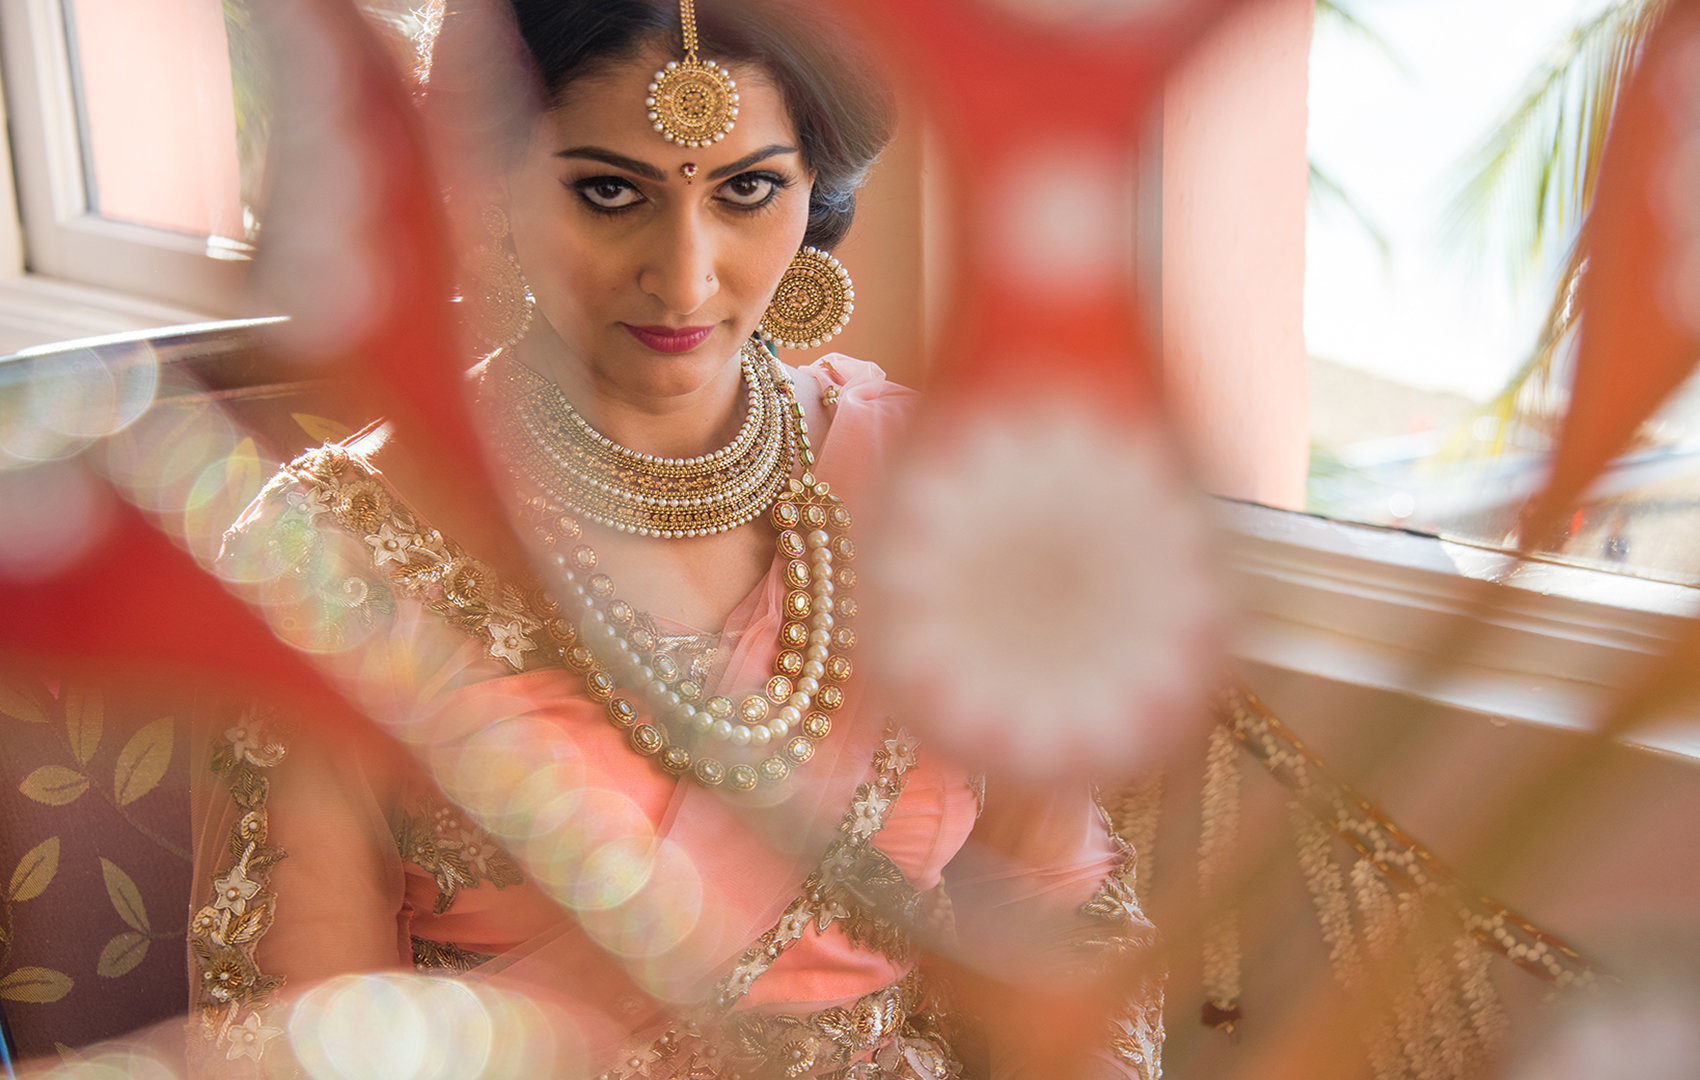 Indian wedding photographers on Maui | Kauai | Oahu | Big Island